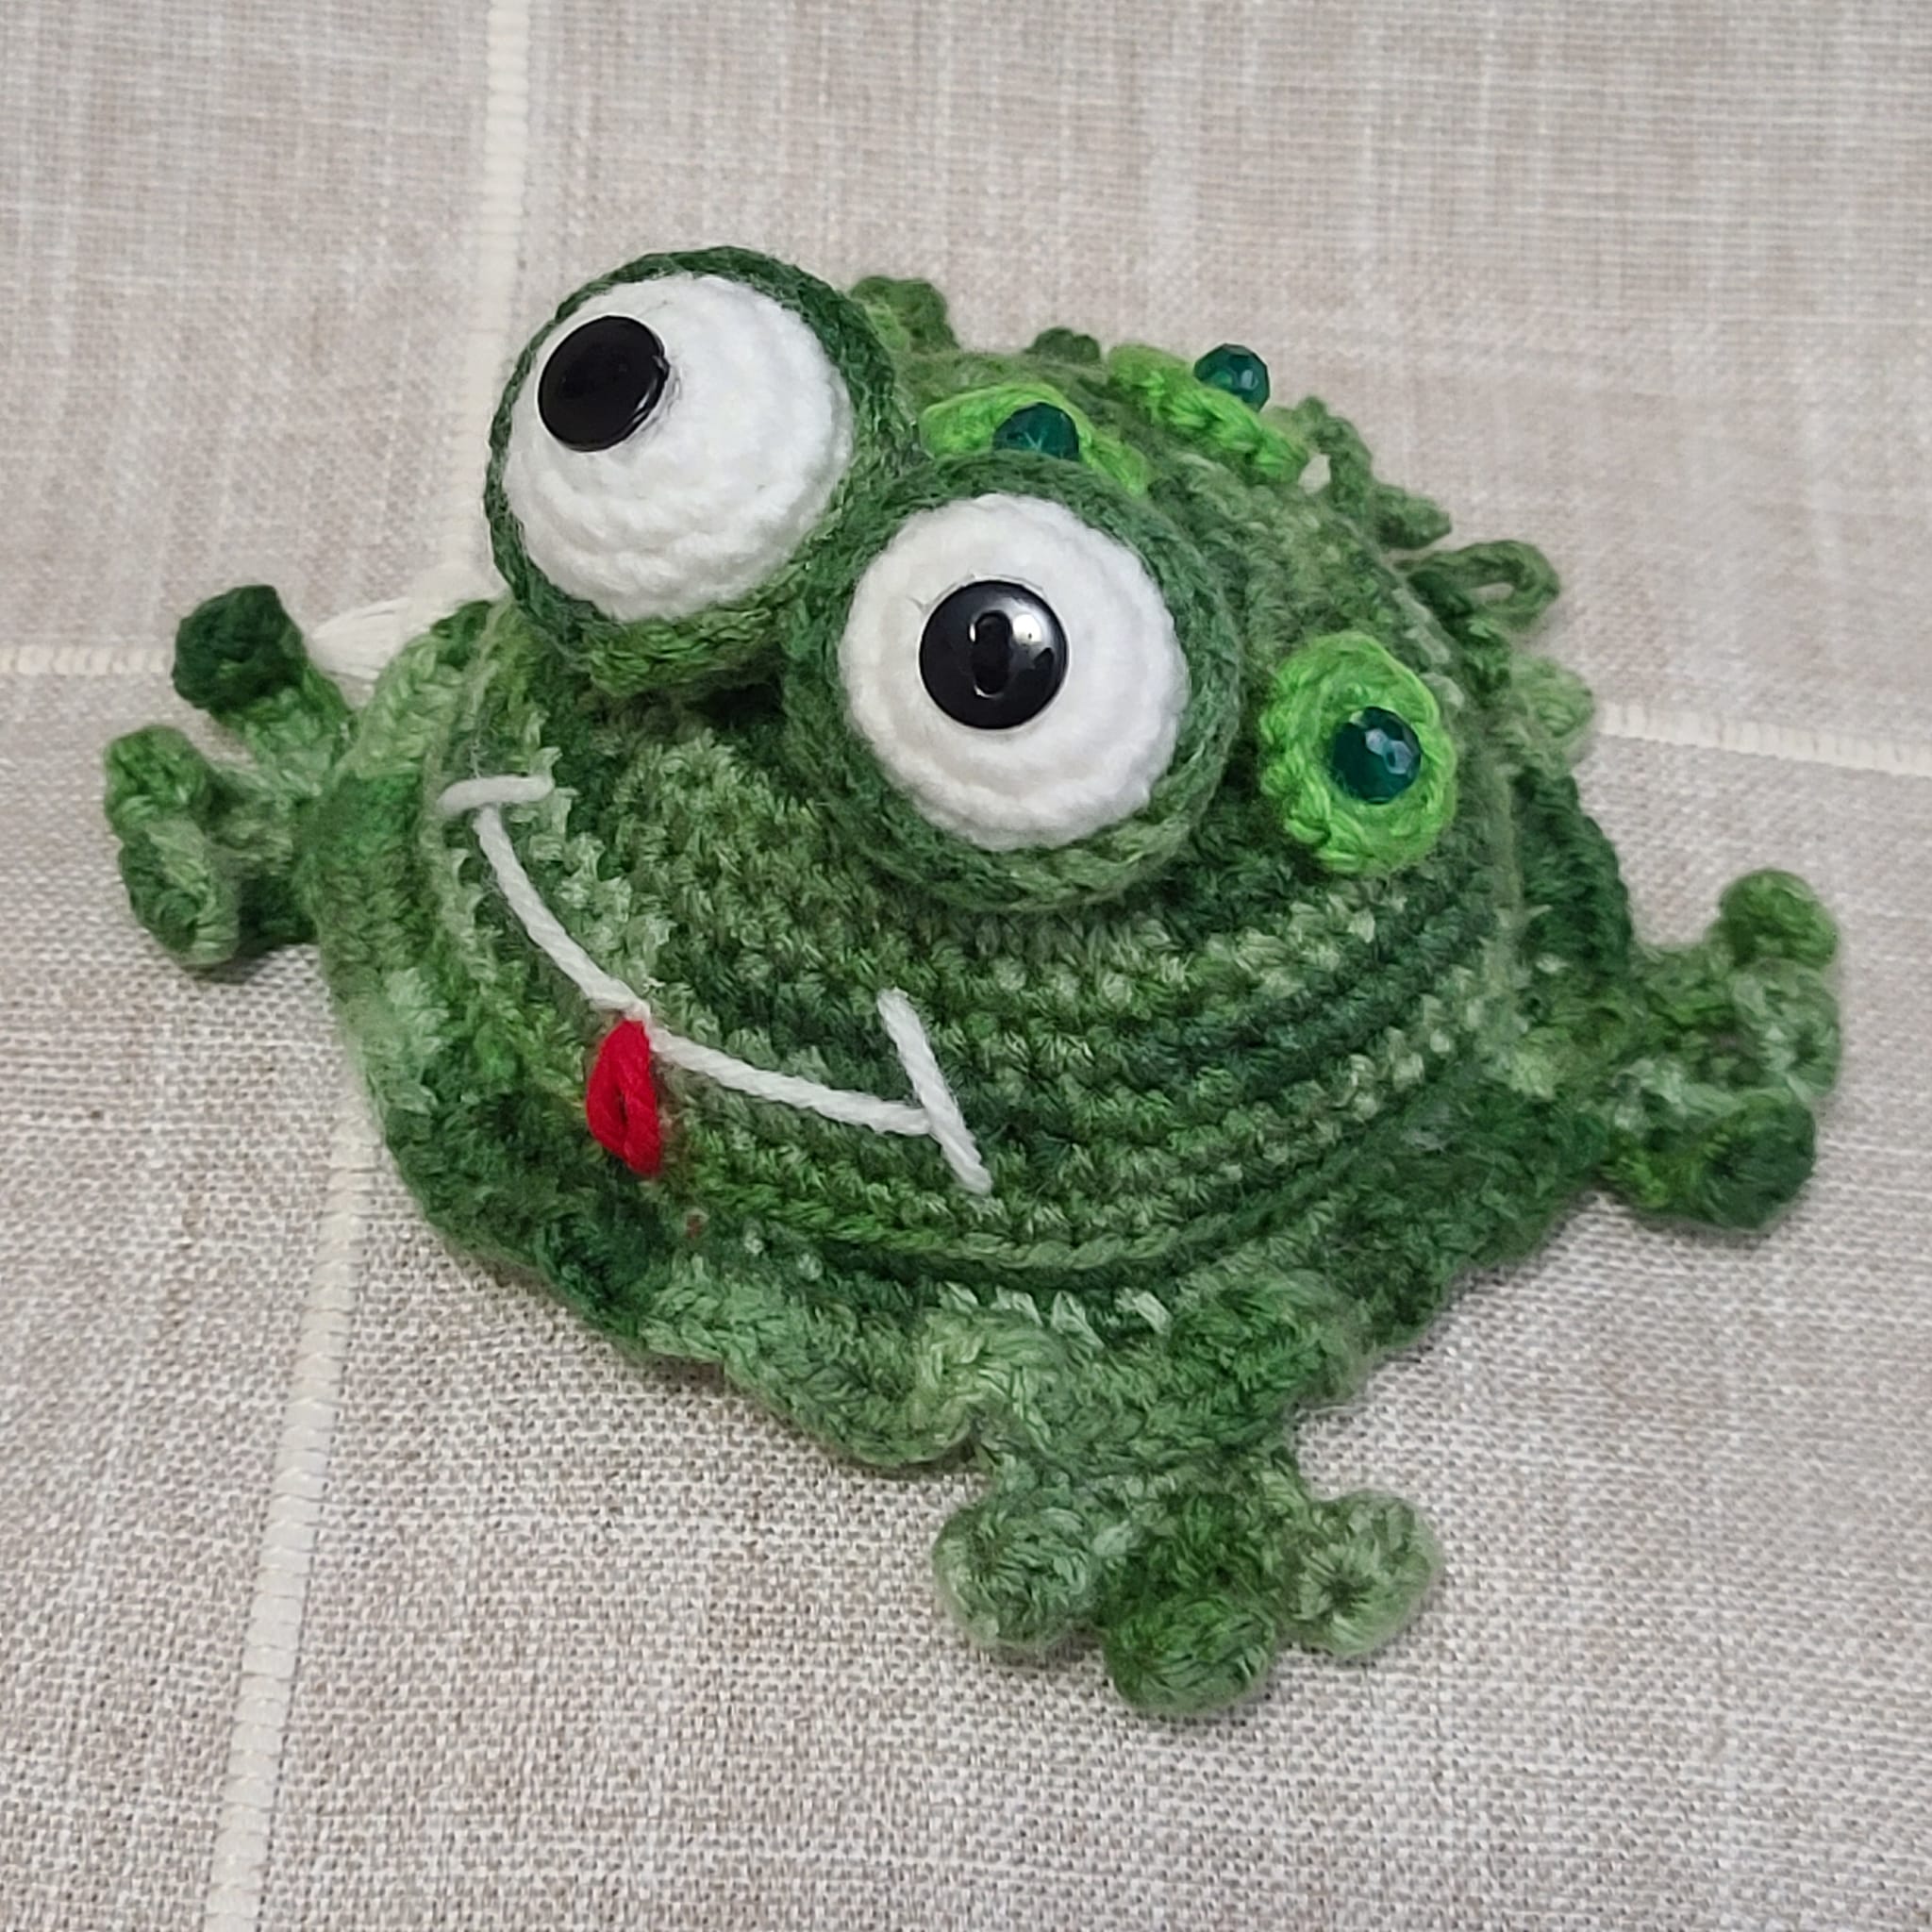 Crochet amigurumi handmade green frog